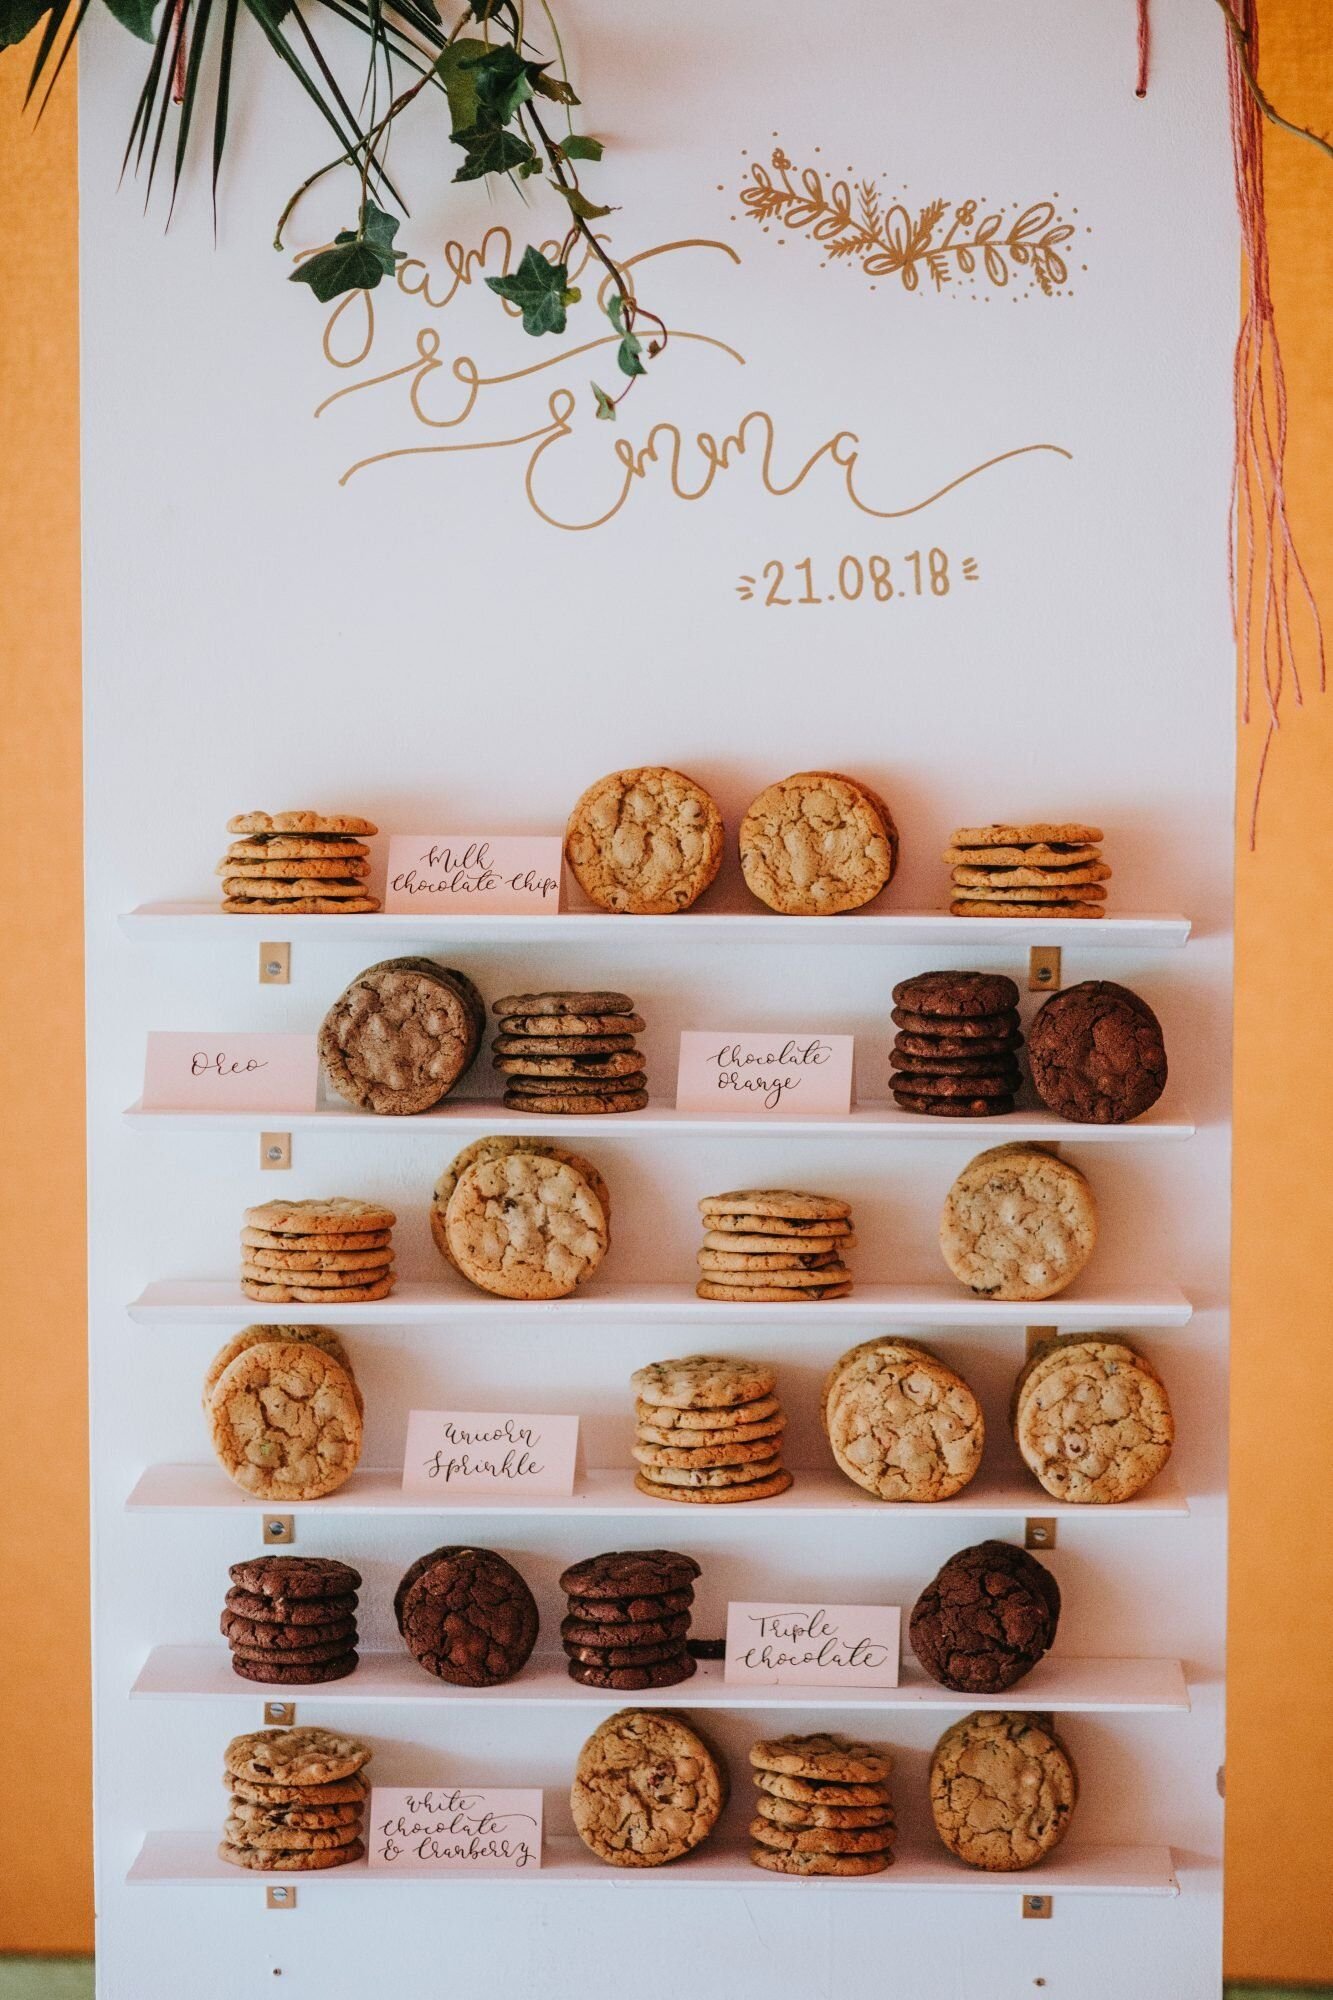 33 Wedding Cookies That Will Sweeten Up Your Dessert Table.jpg